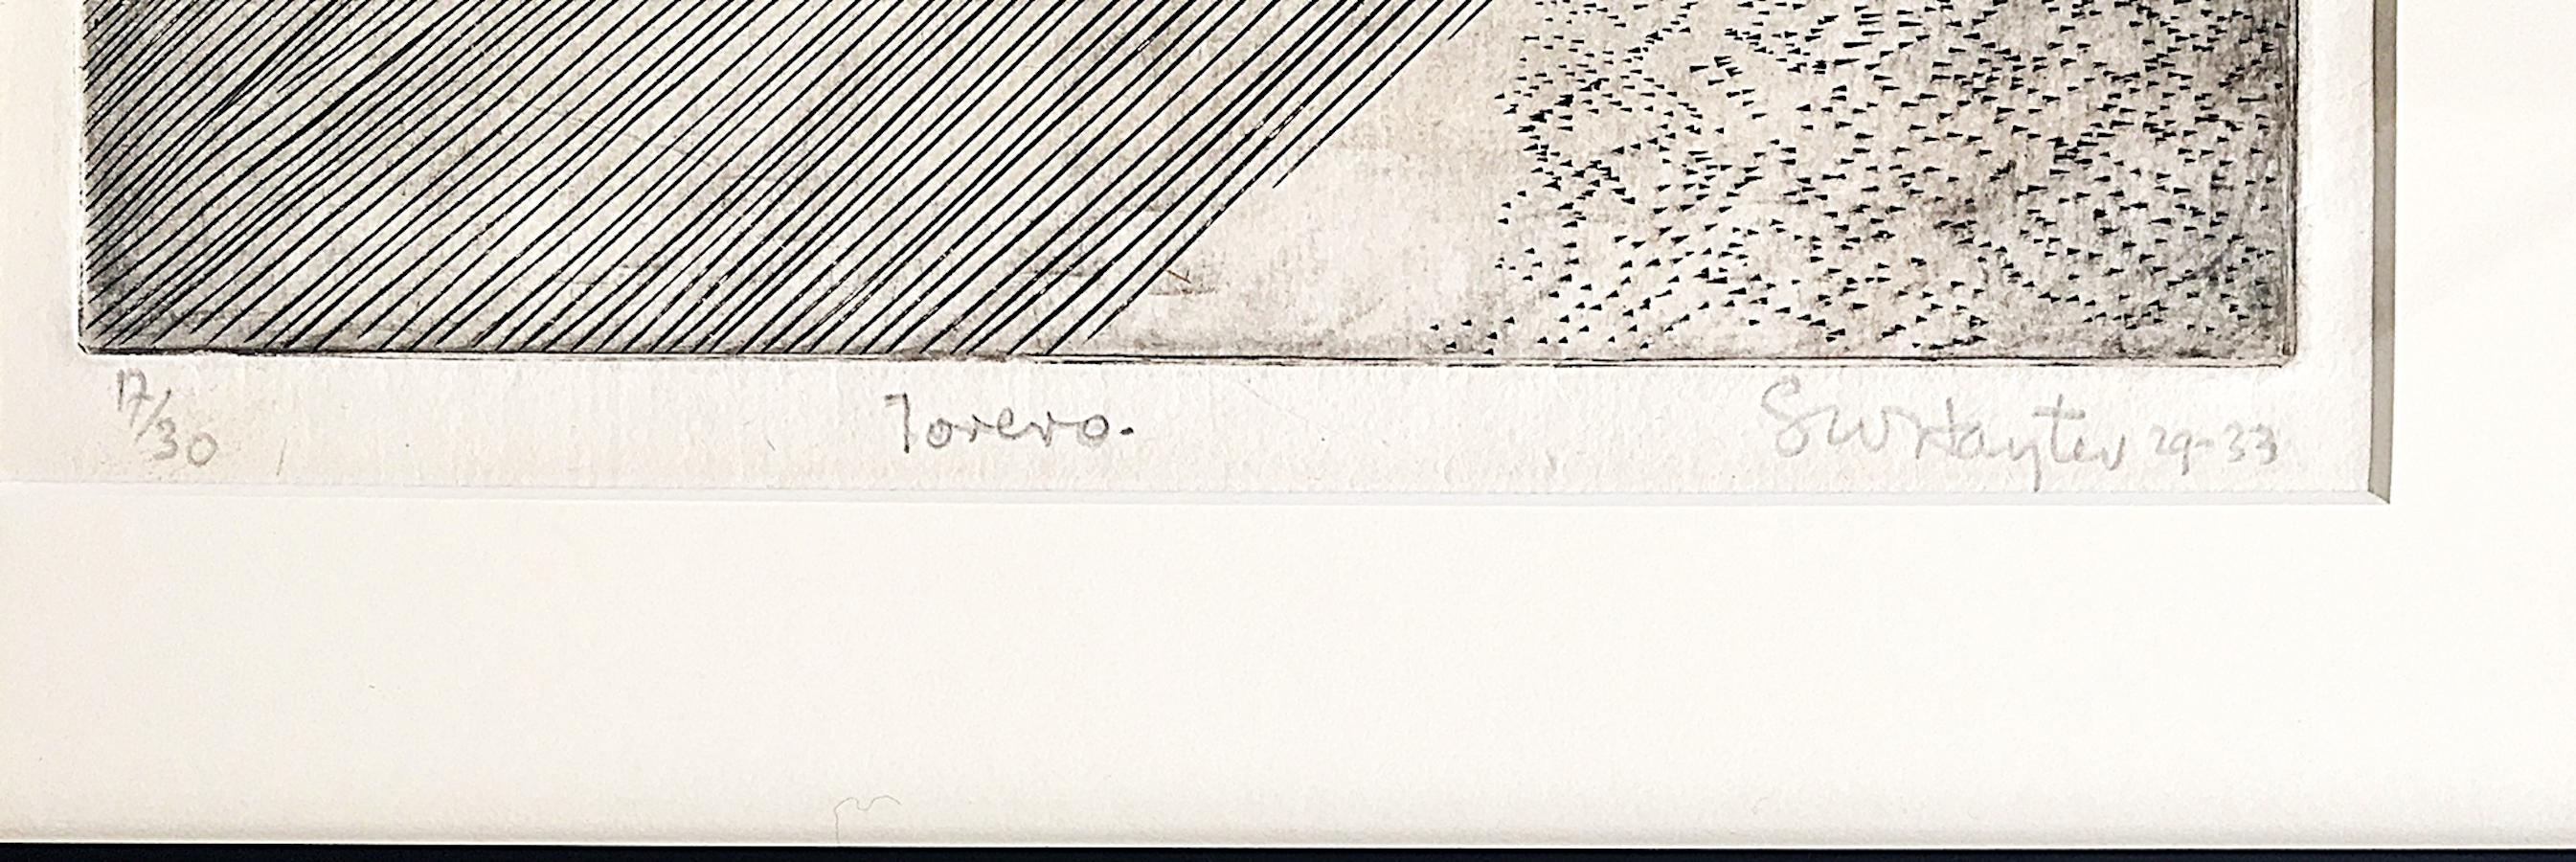 Stanley William Hayter
Torero (aus dem Besitz des Denver Art Museum), 1929-1933
Kupferstich auf Bütten, dritter (letzter) Zustand, auf schwerem BFK Rives cremefarbenem Velin
Signiert, betitelt, nummeriert 17 aus der Auflage von 30 und datiert von